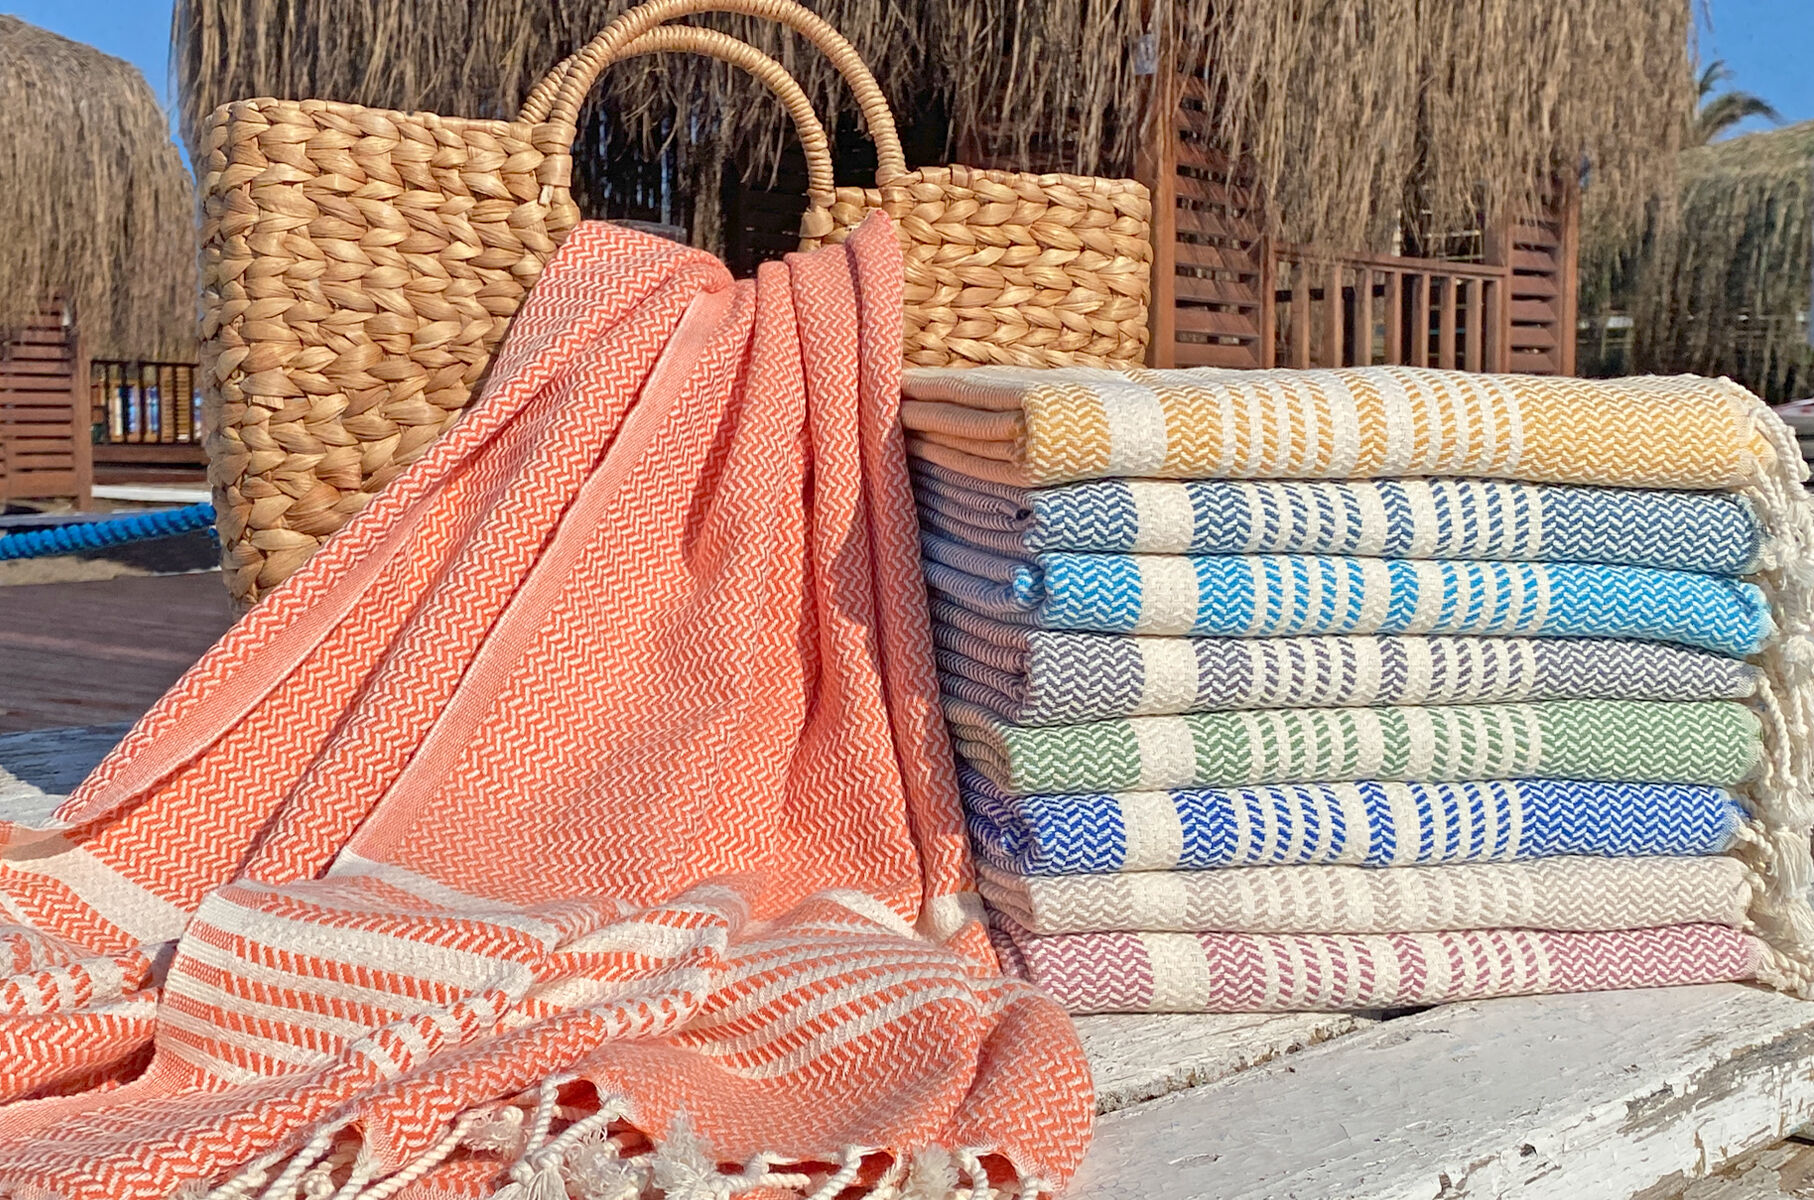 Hamam handdoek | De mooiste hamamdoeken kopen online Hamamdoek.nl